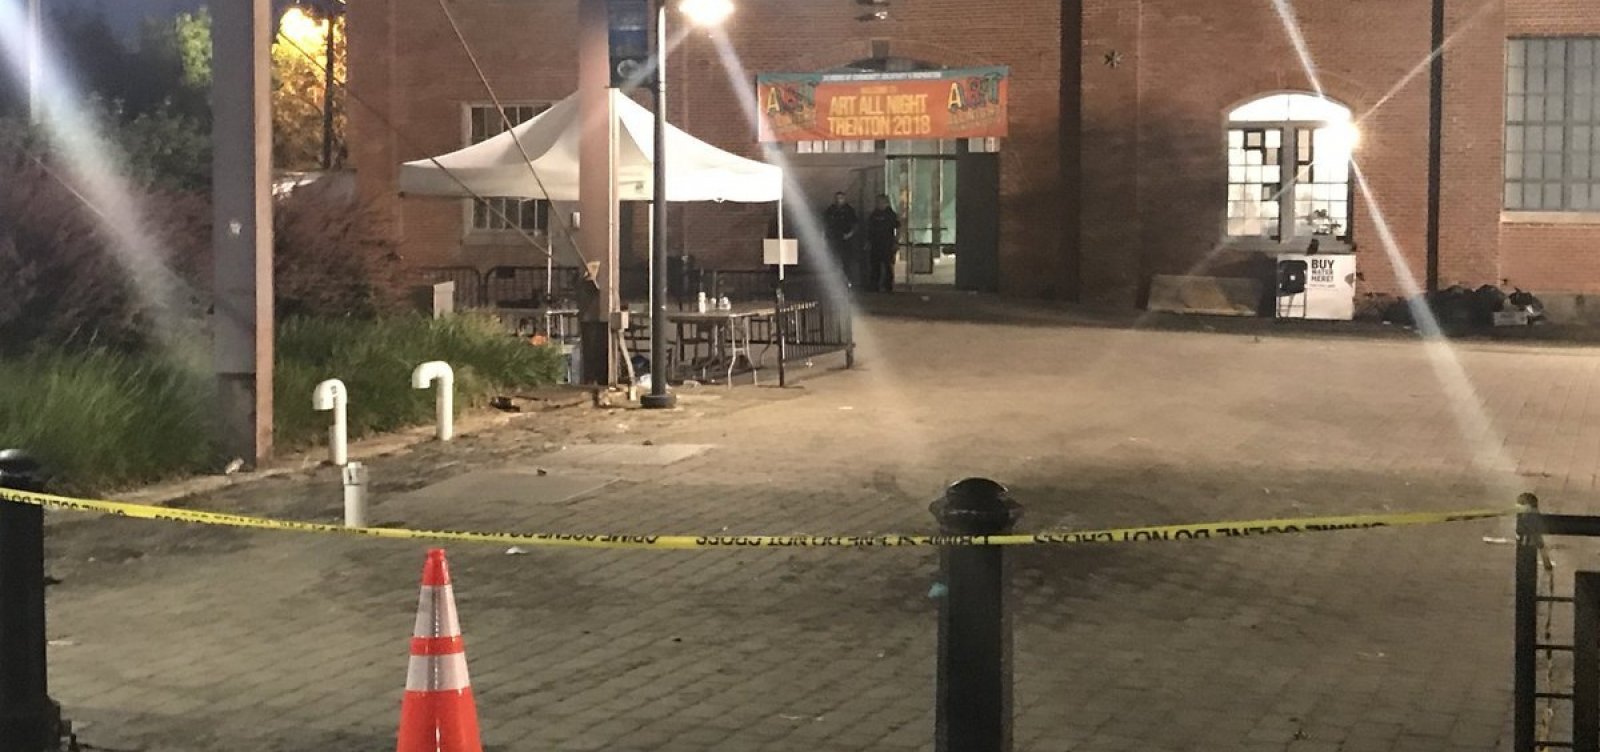 Tiroteio durante festival de arte em Nova Jersey deixa um morto e 20 feridos